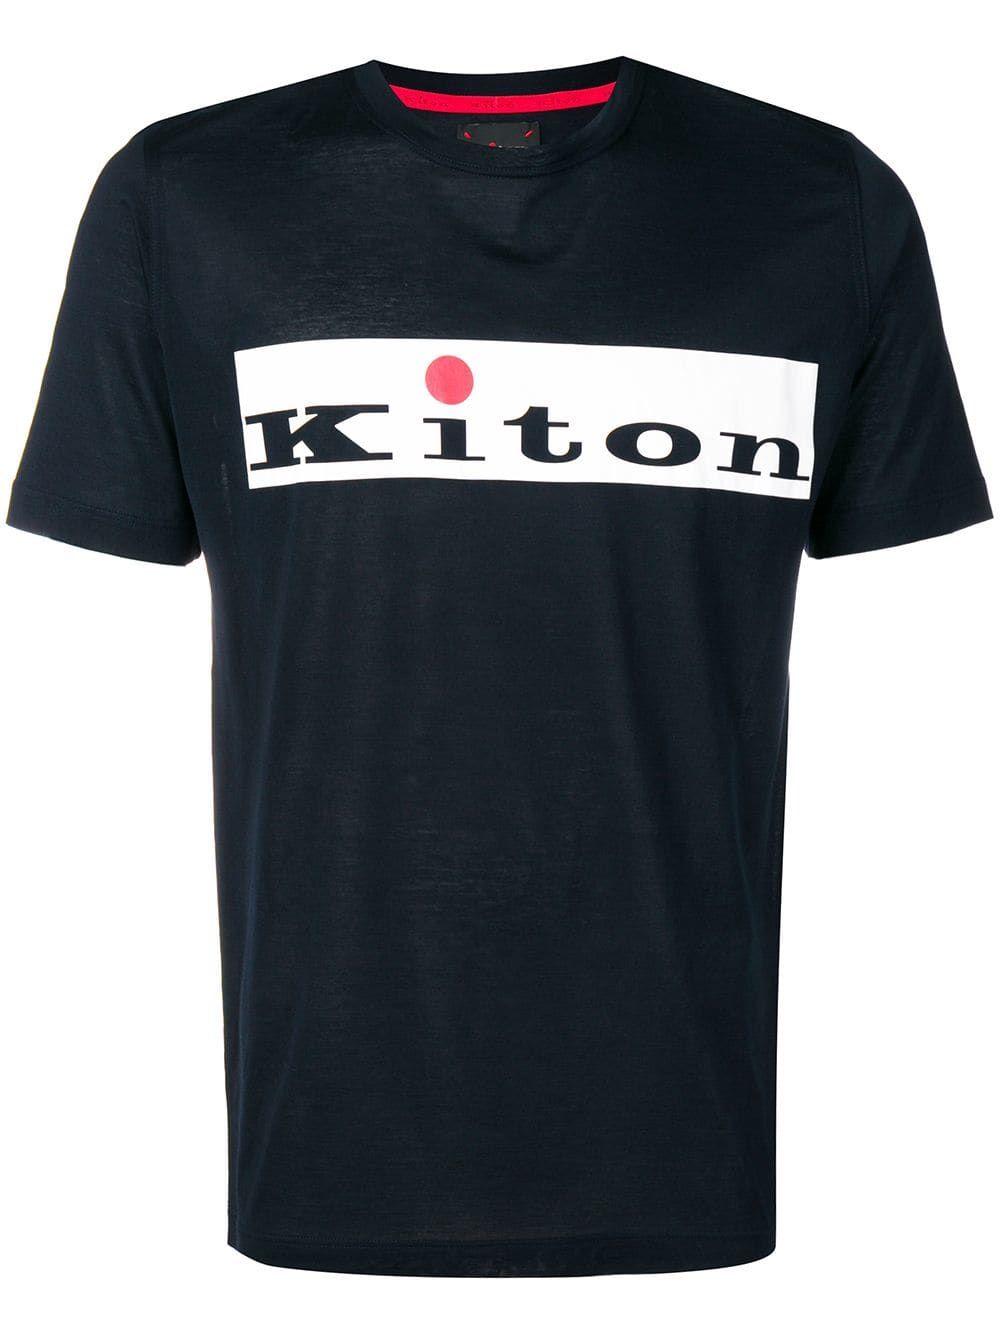 Kiton Logo - KITON KITON LOGO T-SHIRT - SCHWARZ. #kiton #cloth | Kiton in 2019 ...